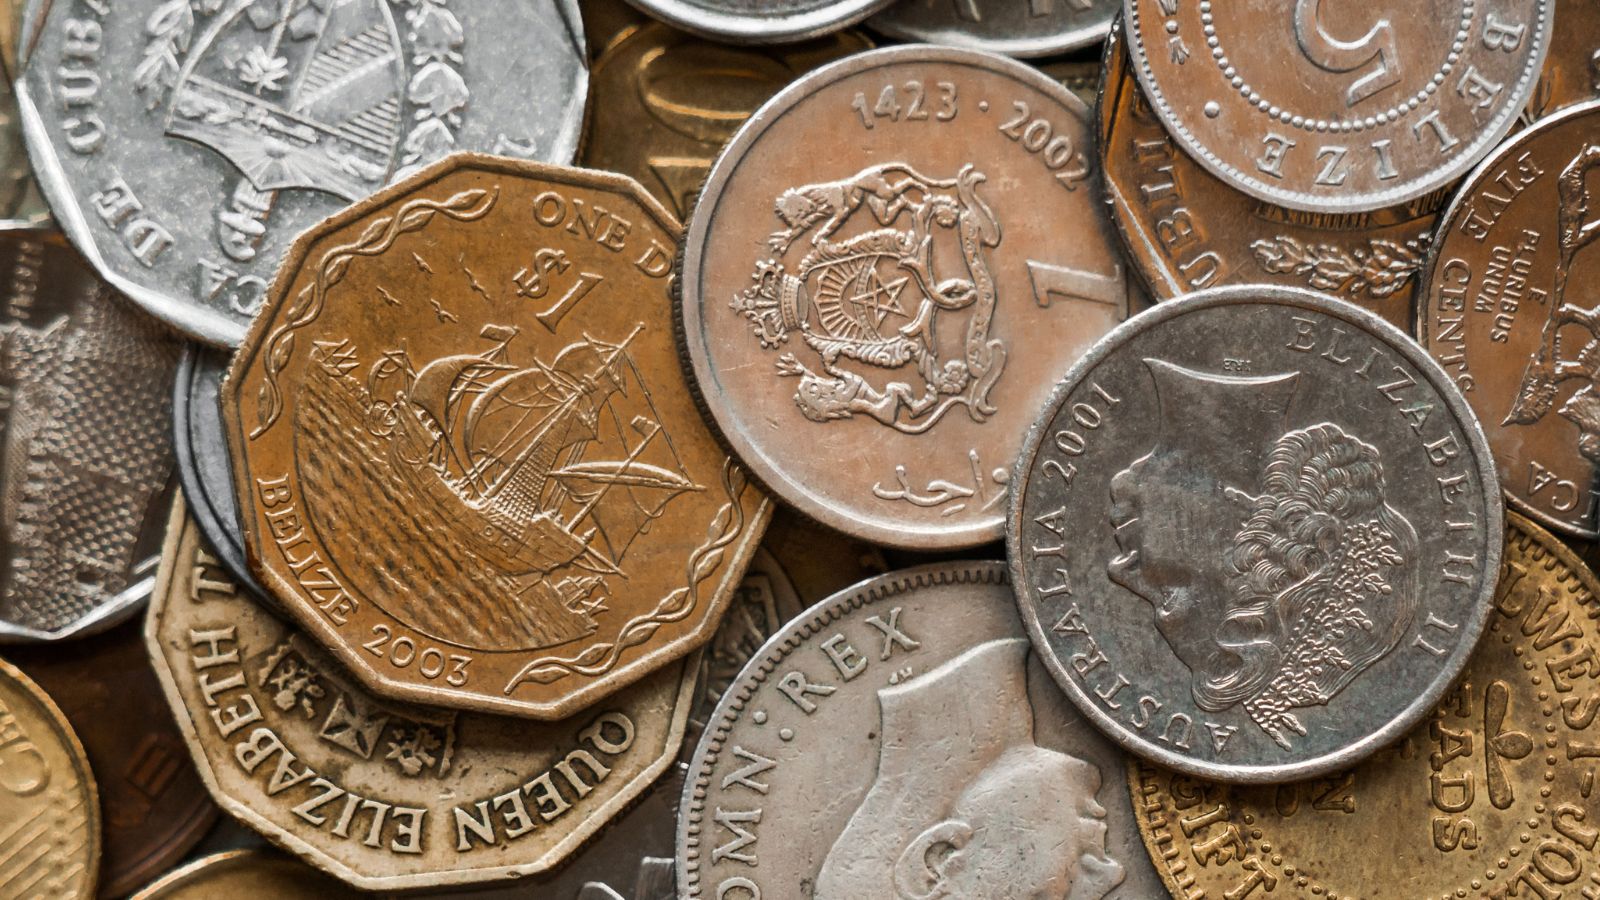 Monete rare: 1 euro può valere anche 1000 euro